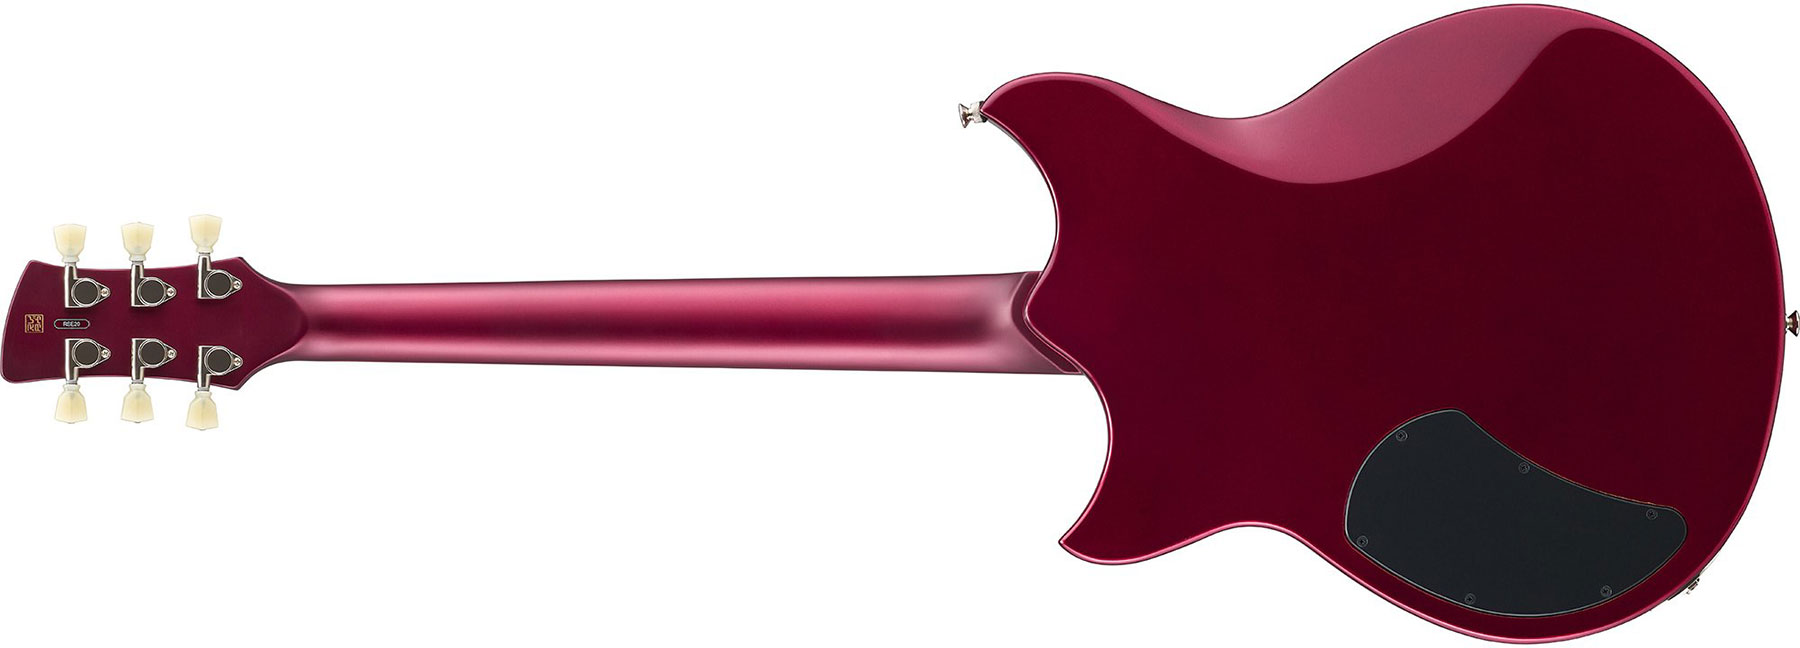 Yamaha Rse20 Revstar Element Hh Ht Rw - Red Copper - Guitarra eléctrica de doble corte. - Variation 2